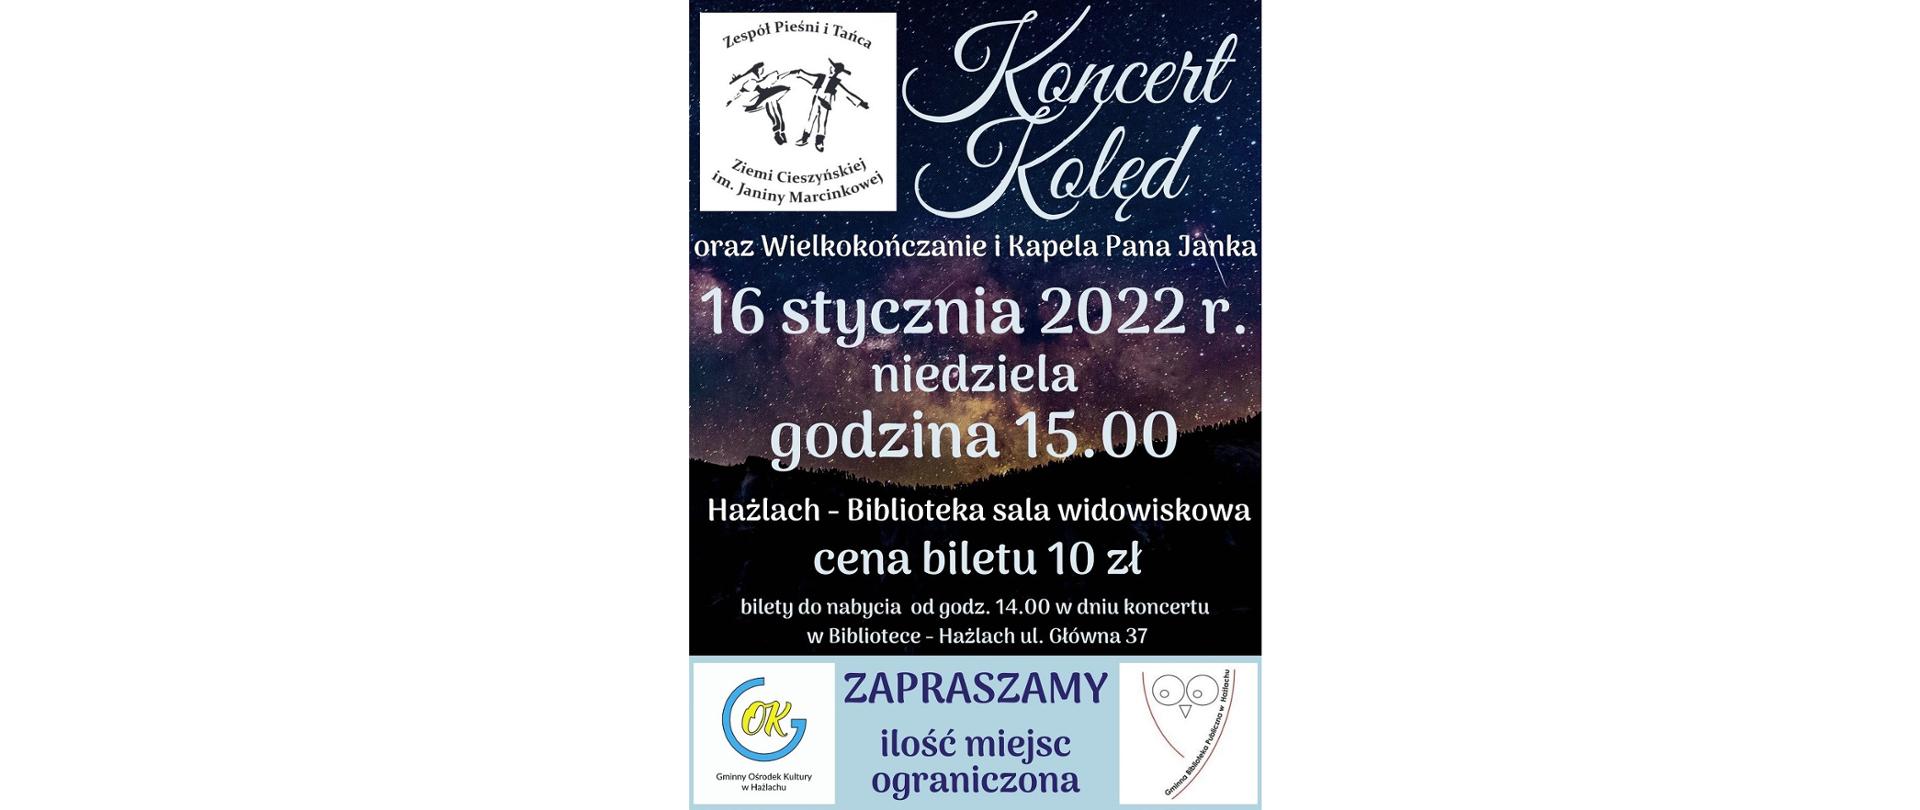 Plakat Koncertu Kolęd. Niedziela 16 stycznia 2022 roku, godzina 15.00. Sala widowiskowa biblioteki w Hażlachu